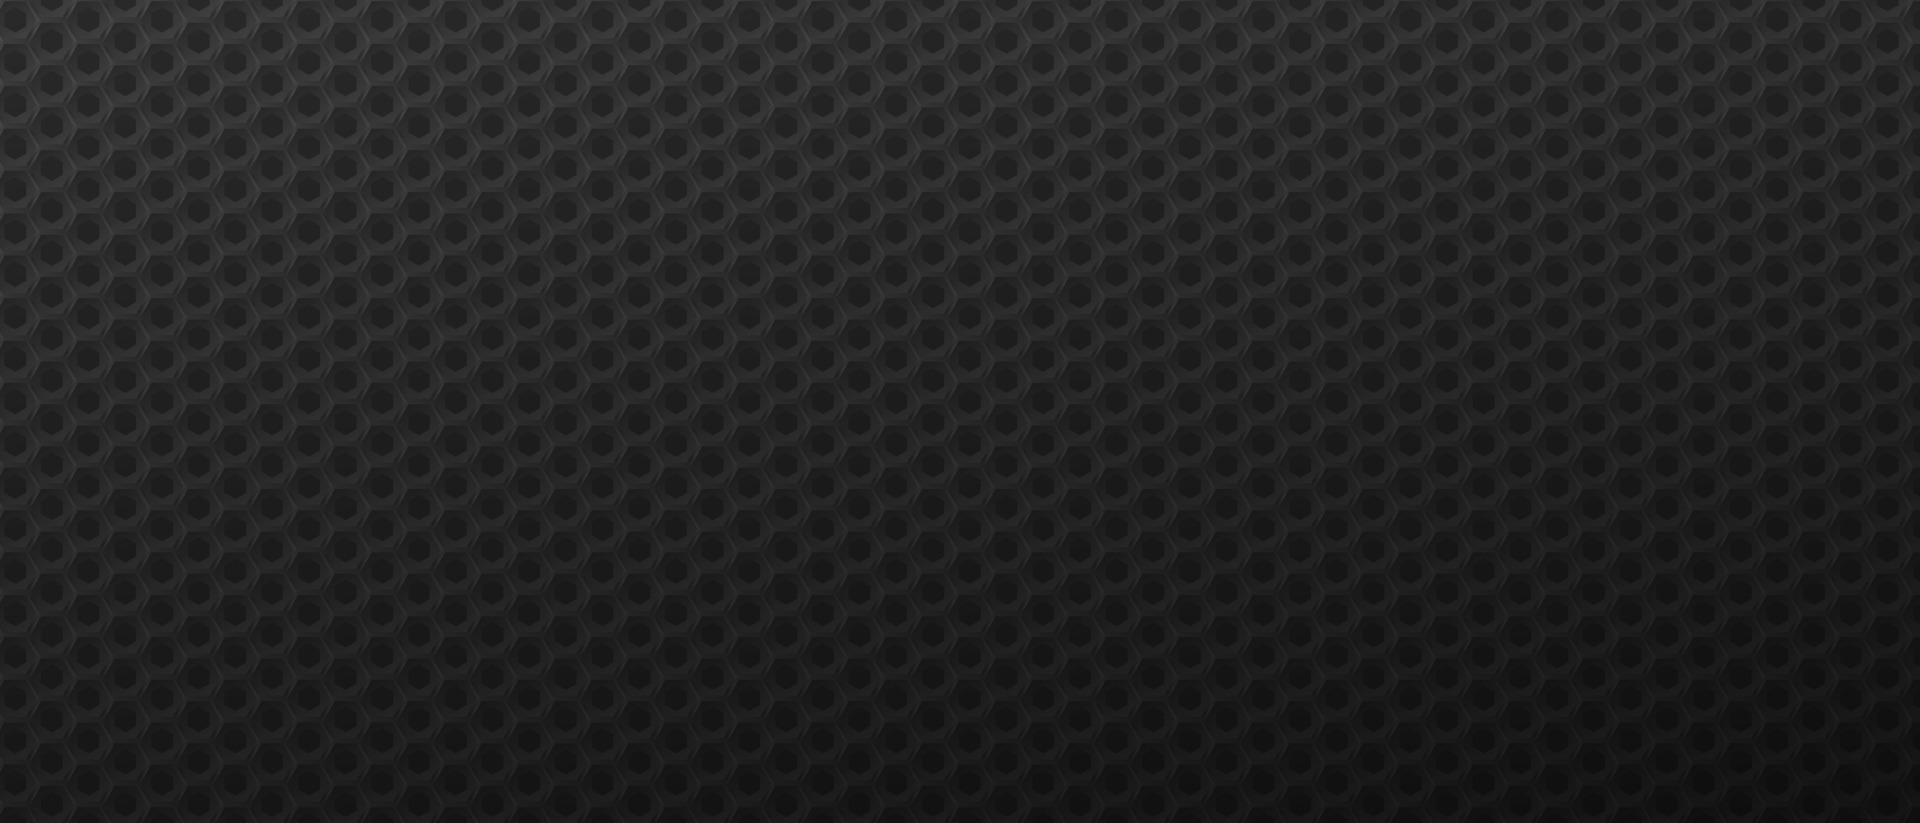 arrière-plan technologique des hexagones futuristes. carreaux polygonaux géométriques noirs texturés dans une texture sombre en vecteur monochrome petit minimalisme